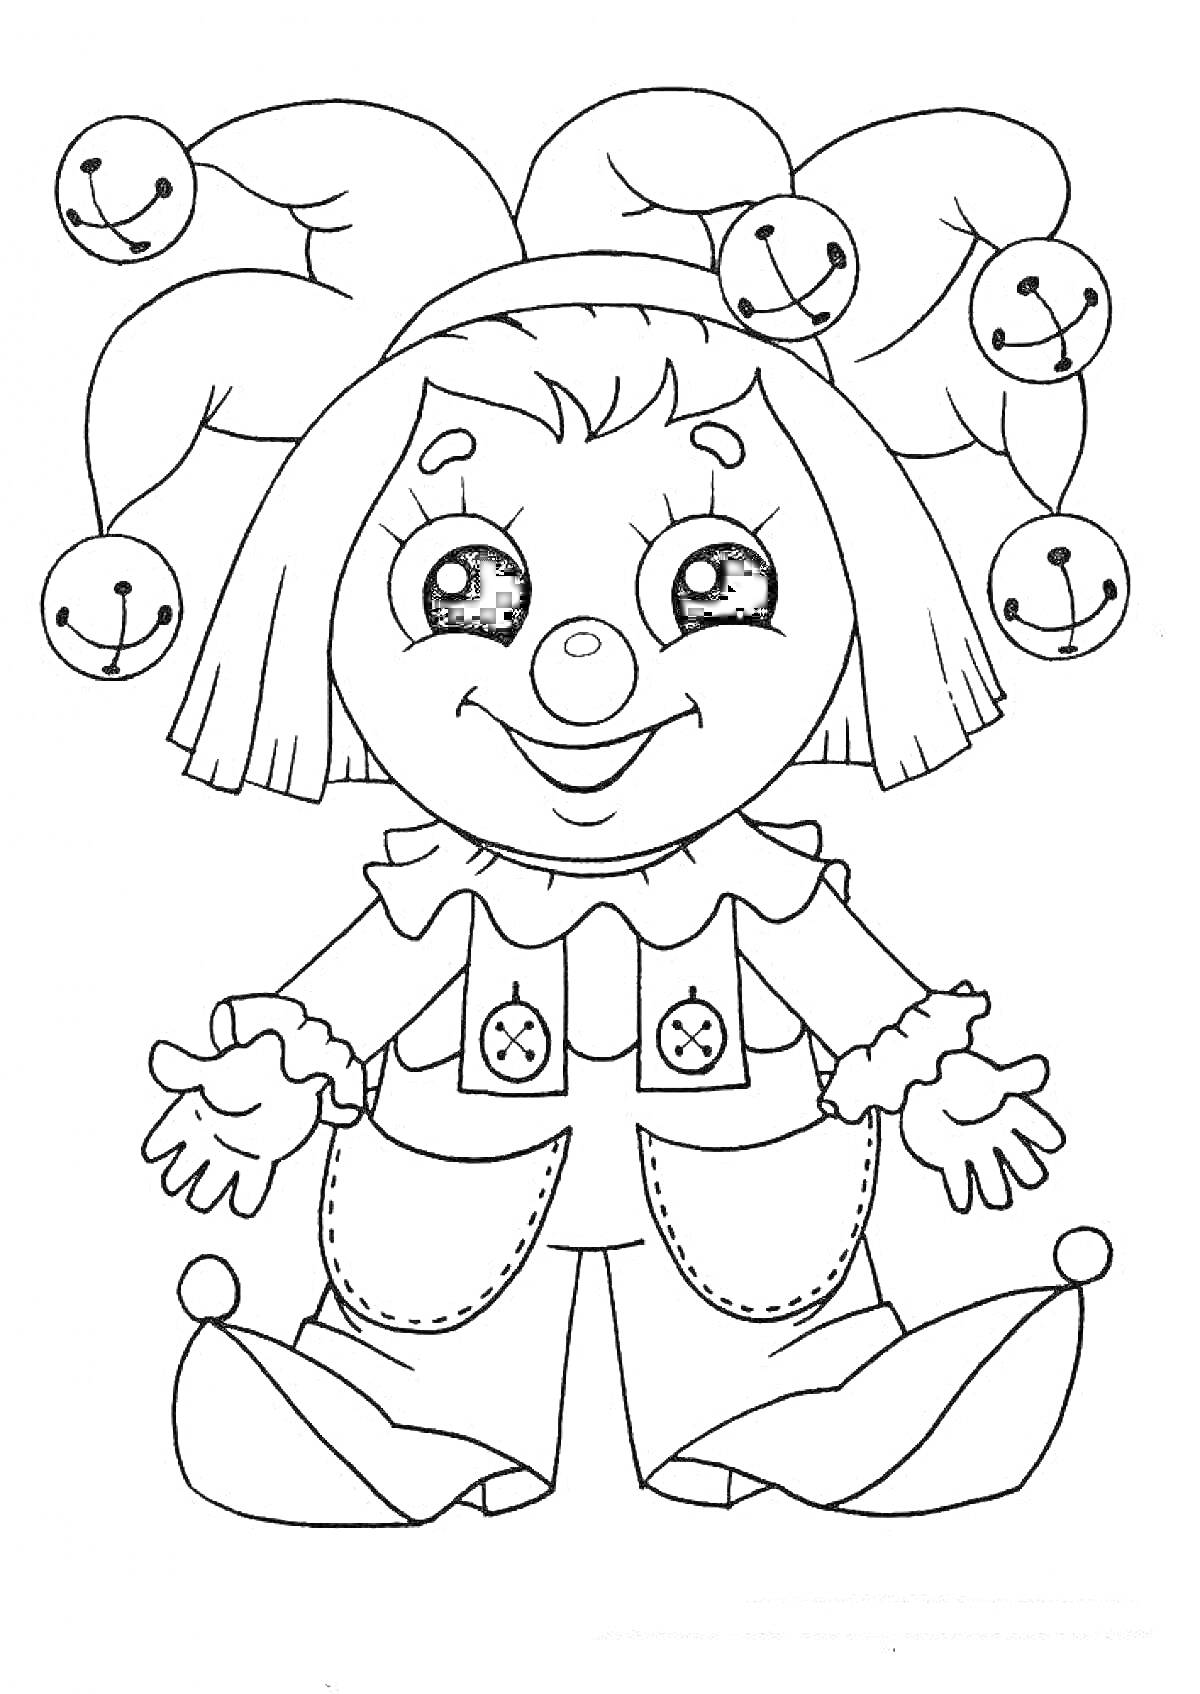 Клоун в костюме с колпаком и бубенцами, с большими глазами и пуговицами на штанах